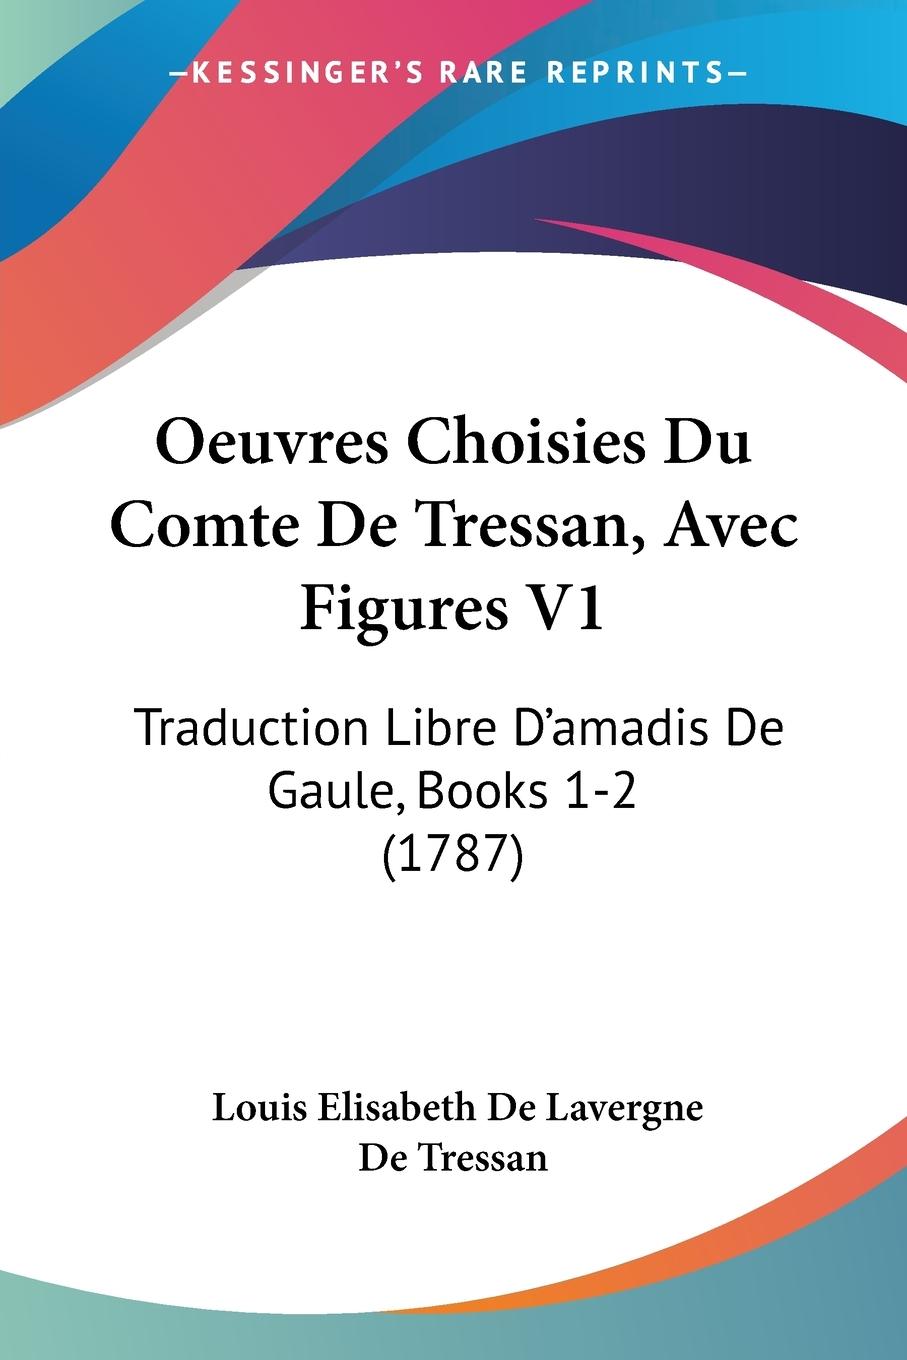 Oeuvres Choisies Du Comte De Tressan, Avec Figures V1 - Tressan, Louis Elisabeth De Lavergne De